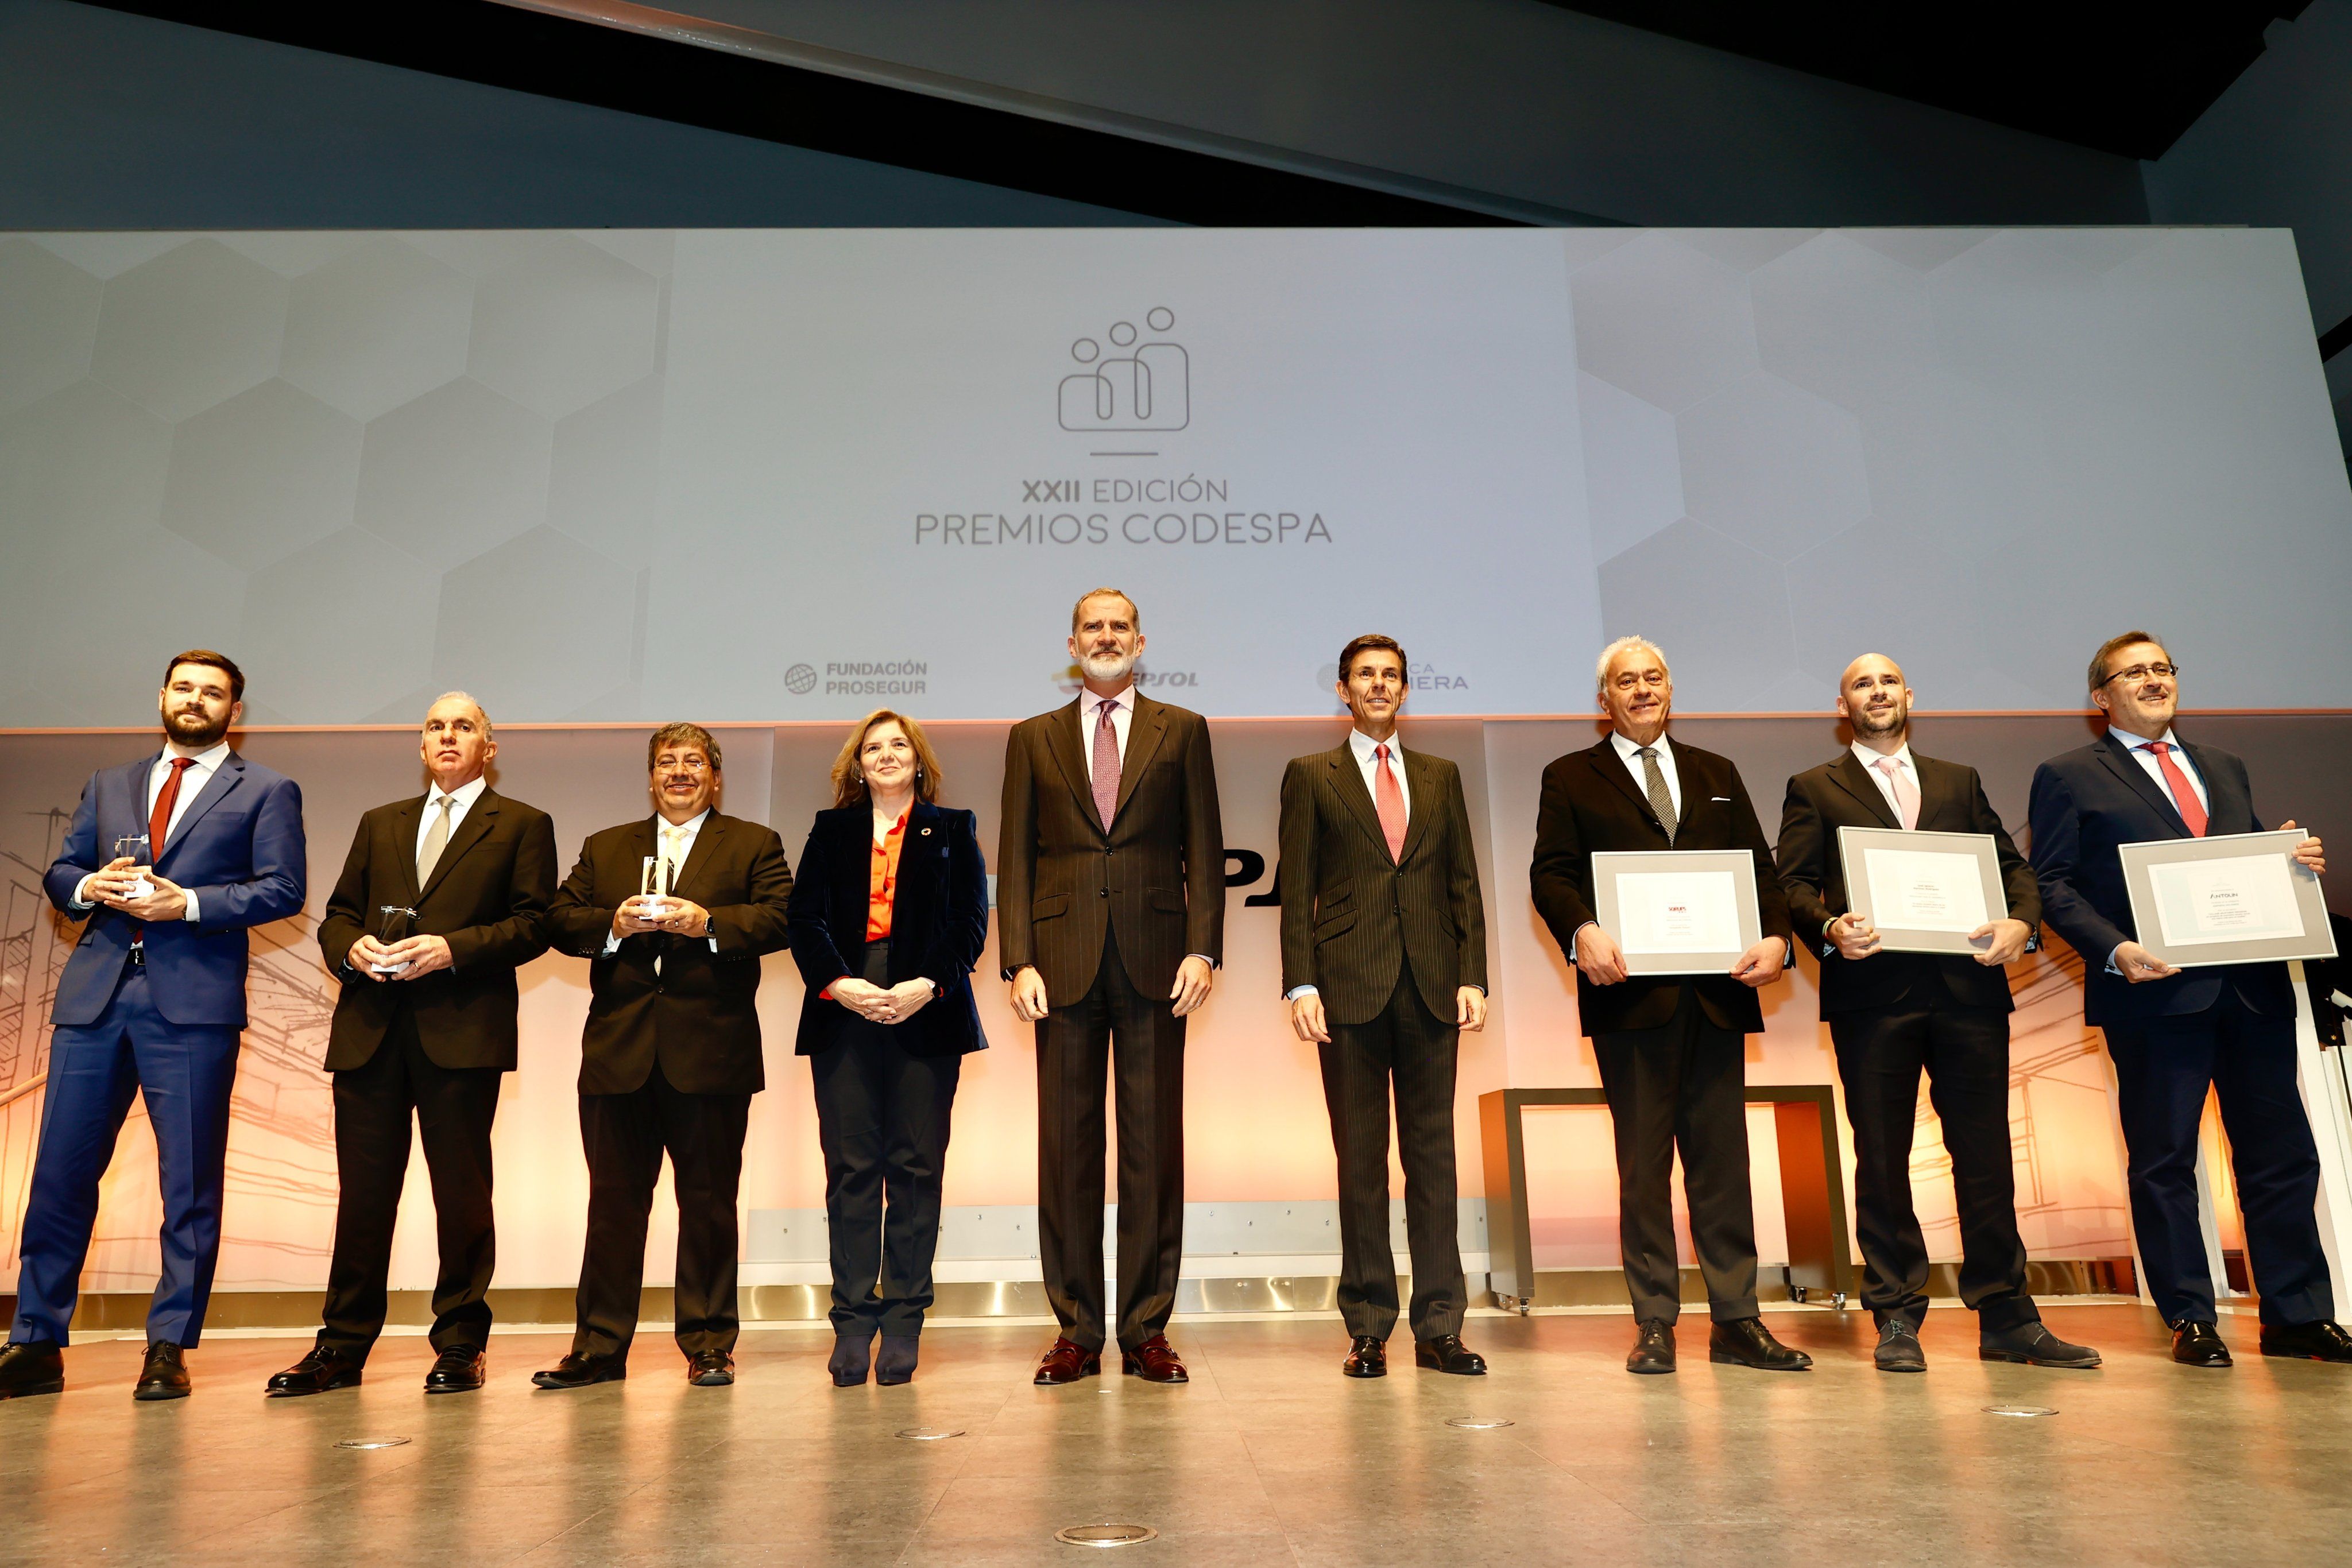 El Rey Felipe VI preside los XXII Premios CODESPA: todos los ganadores